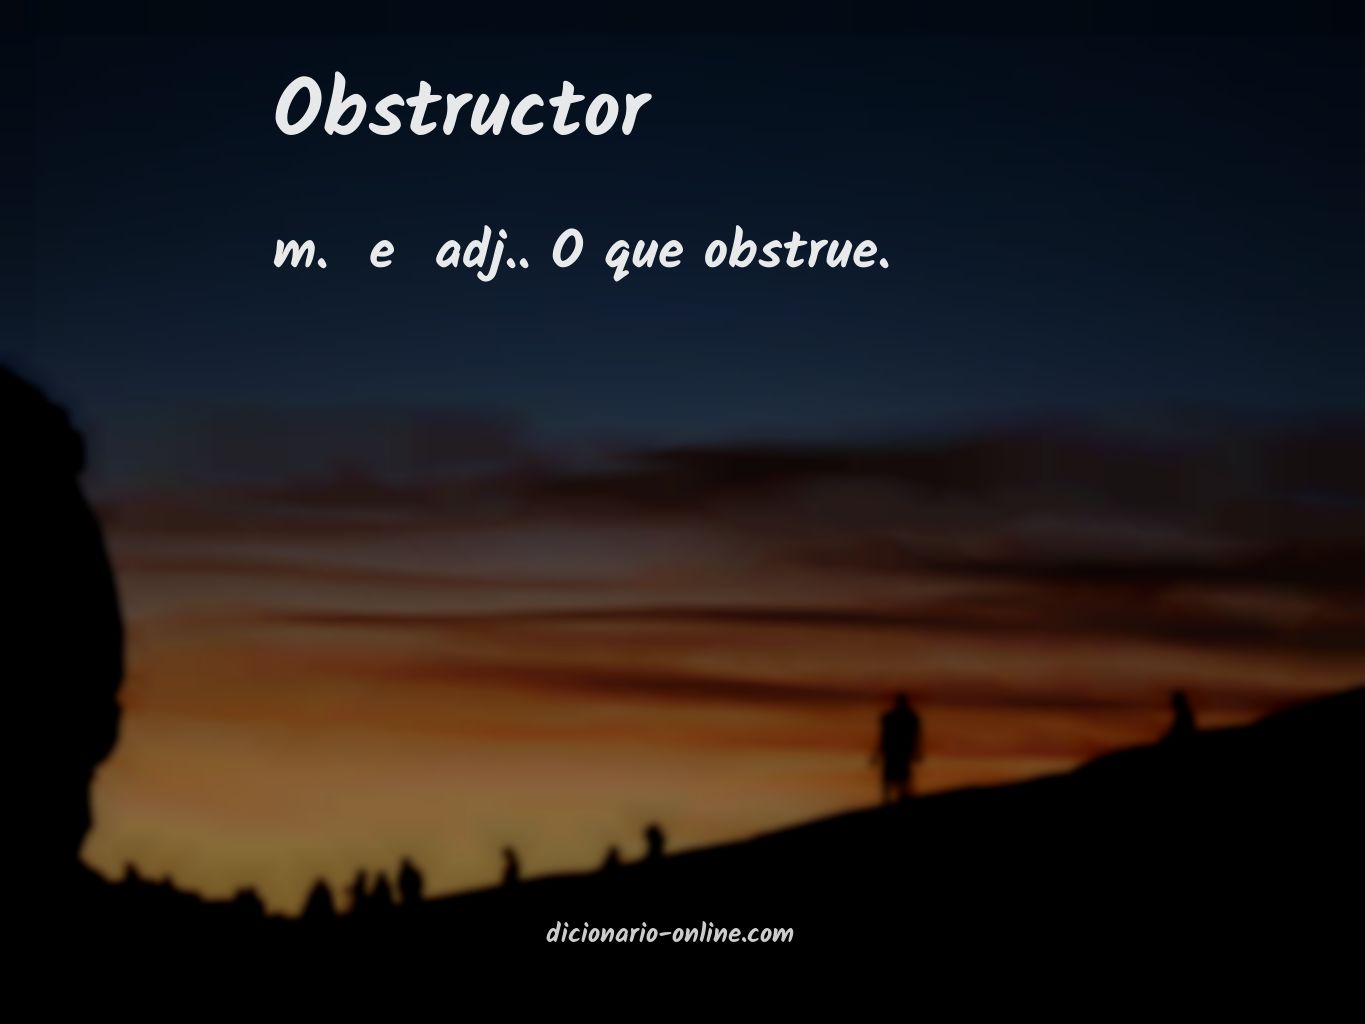 Significado de obstructor